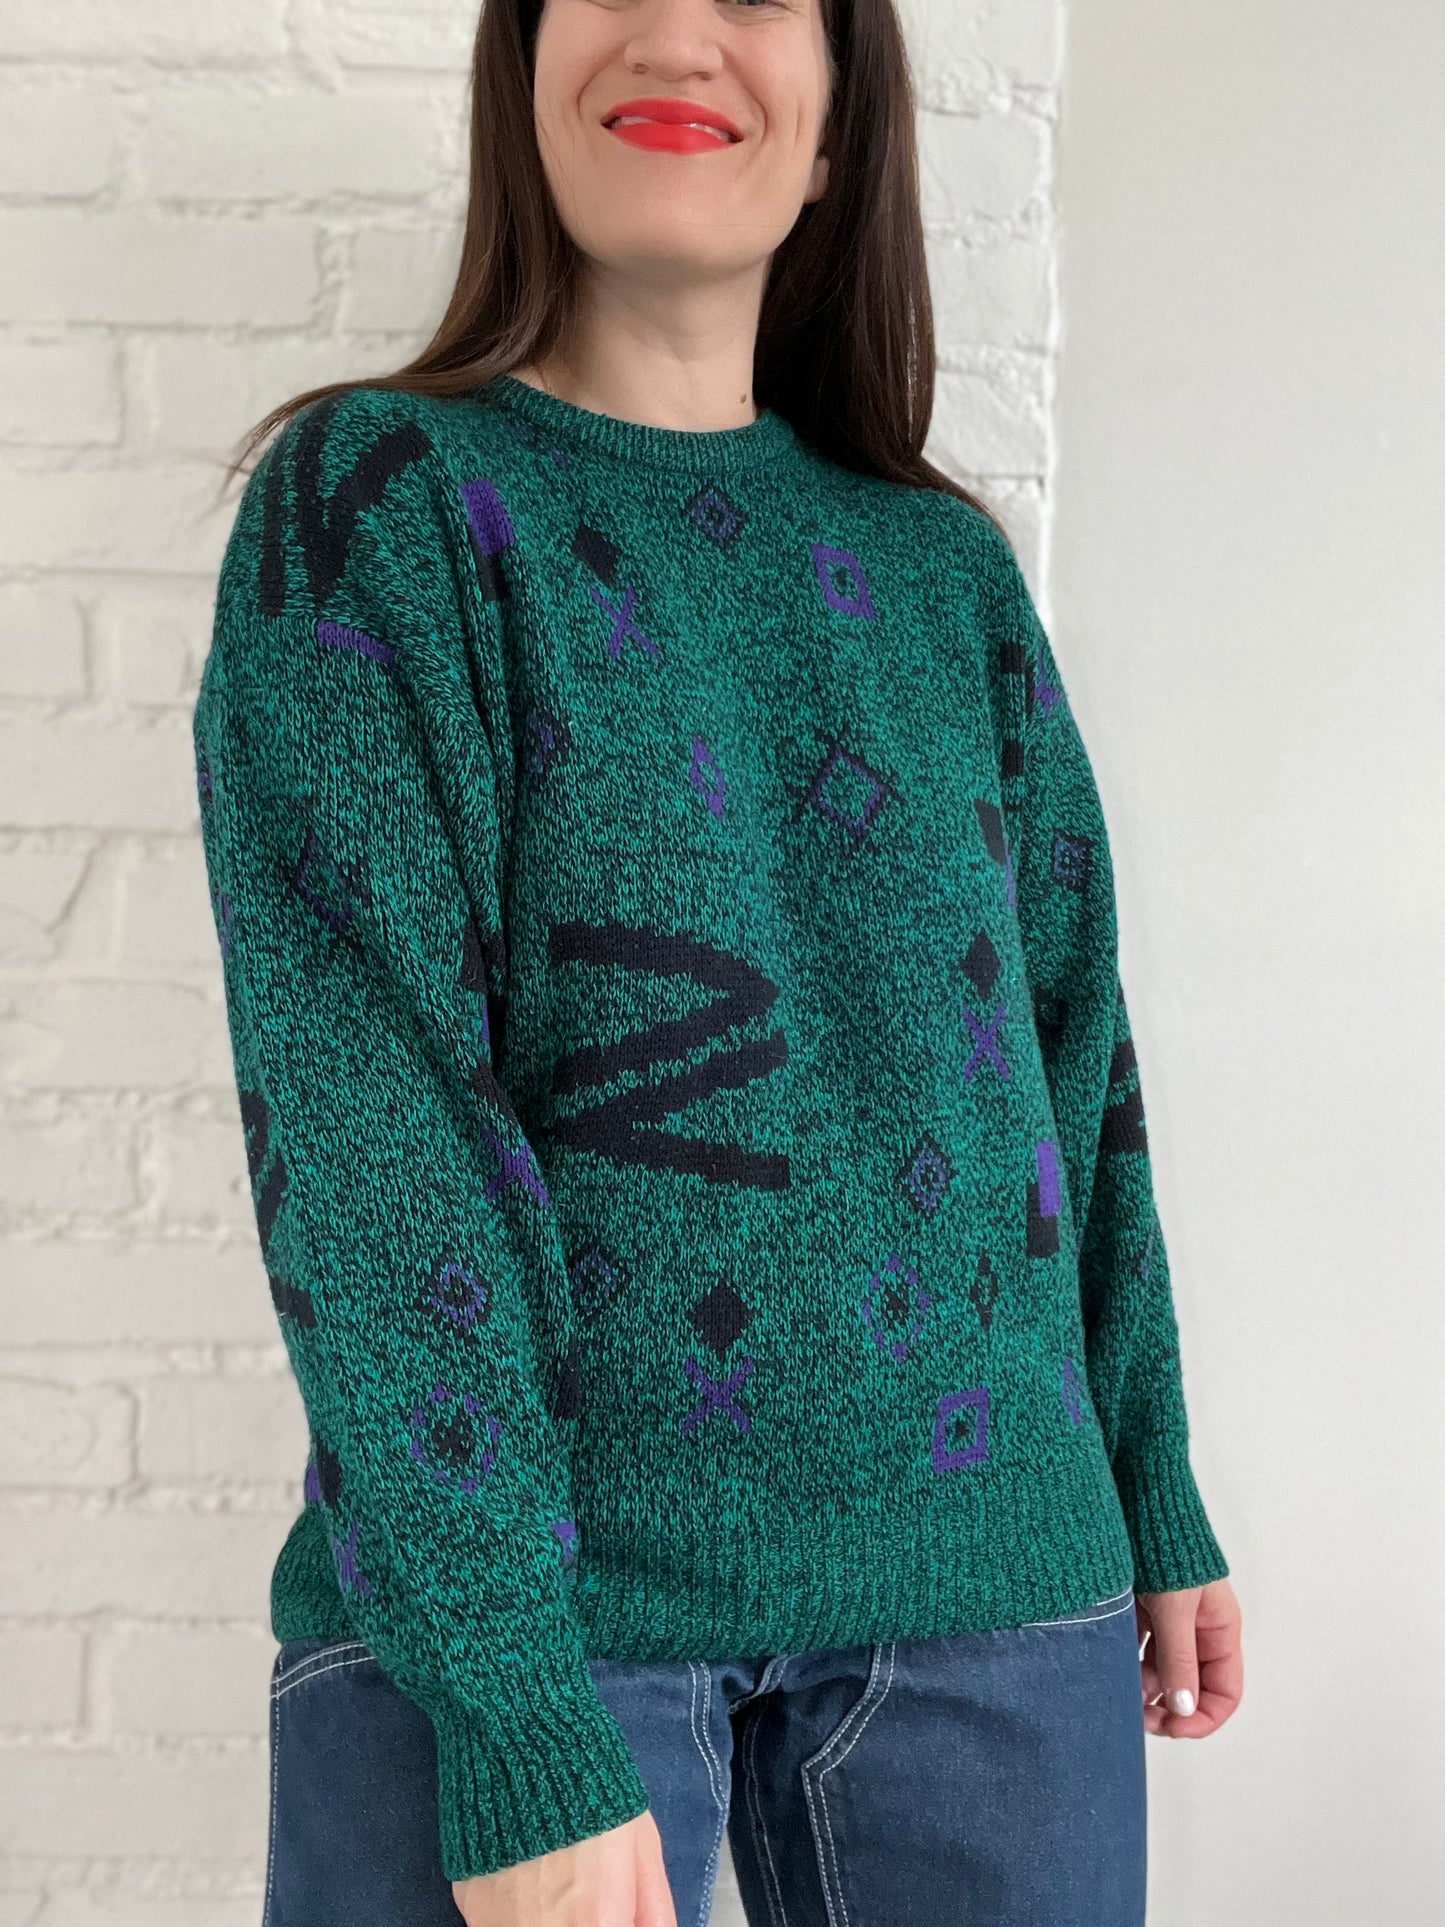 90s Retro Knit Sweater - L